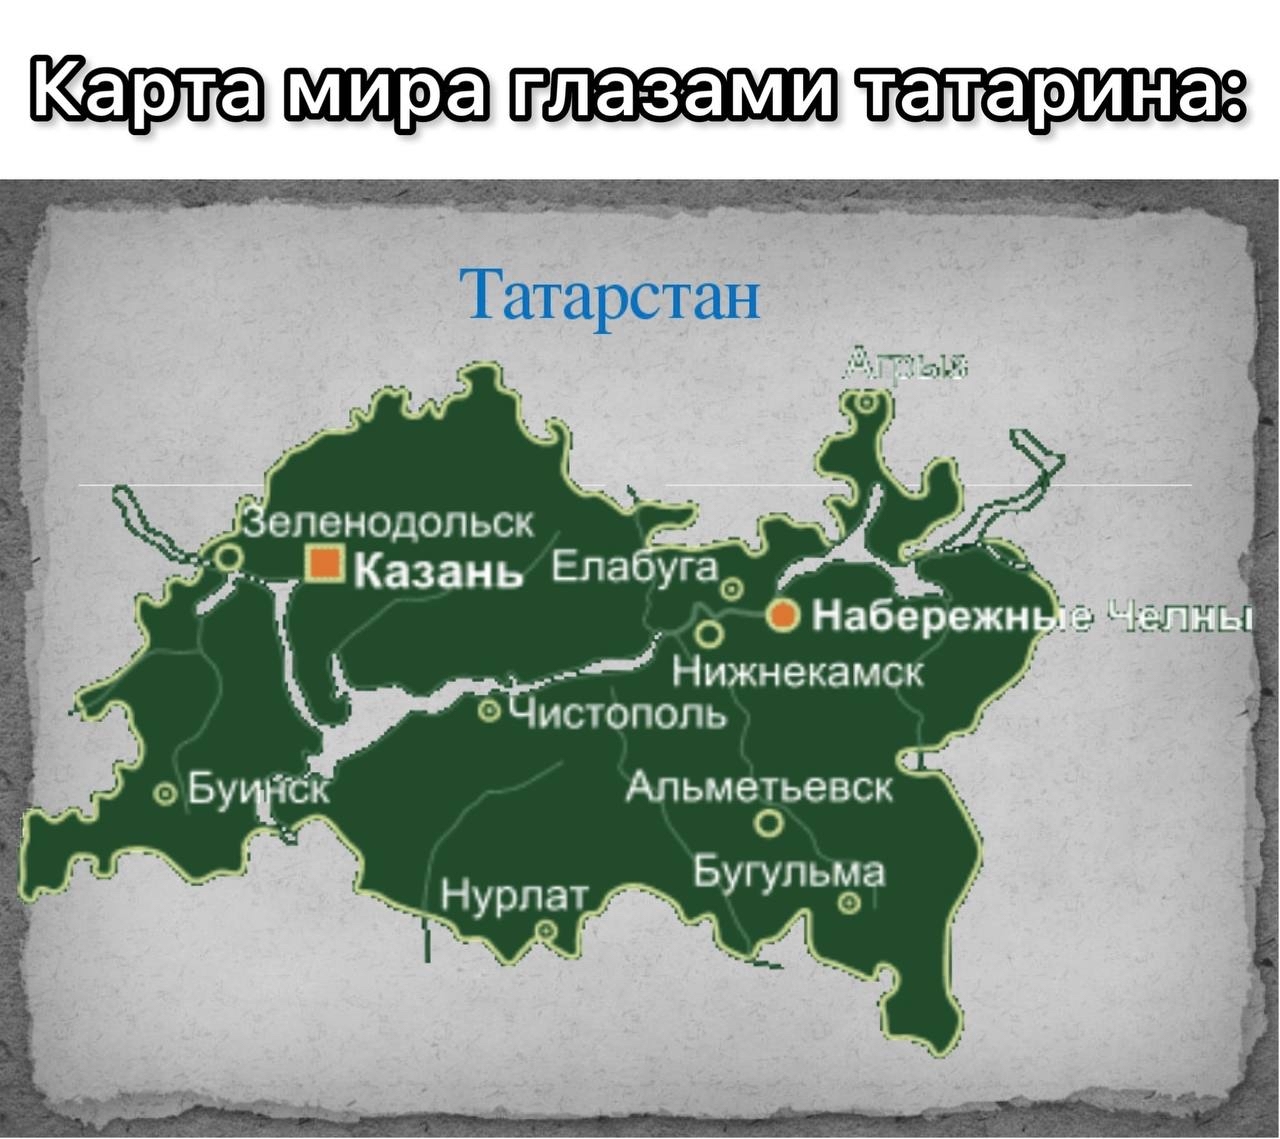 Республика Татарстан на карте